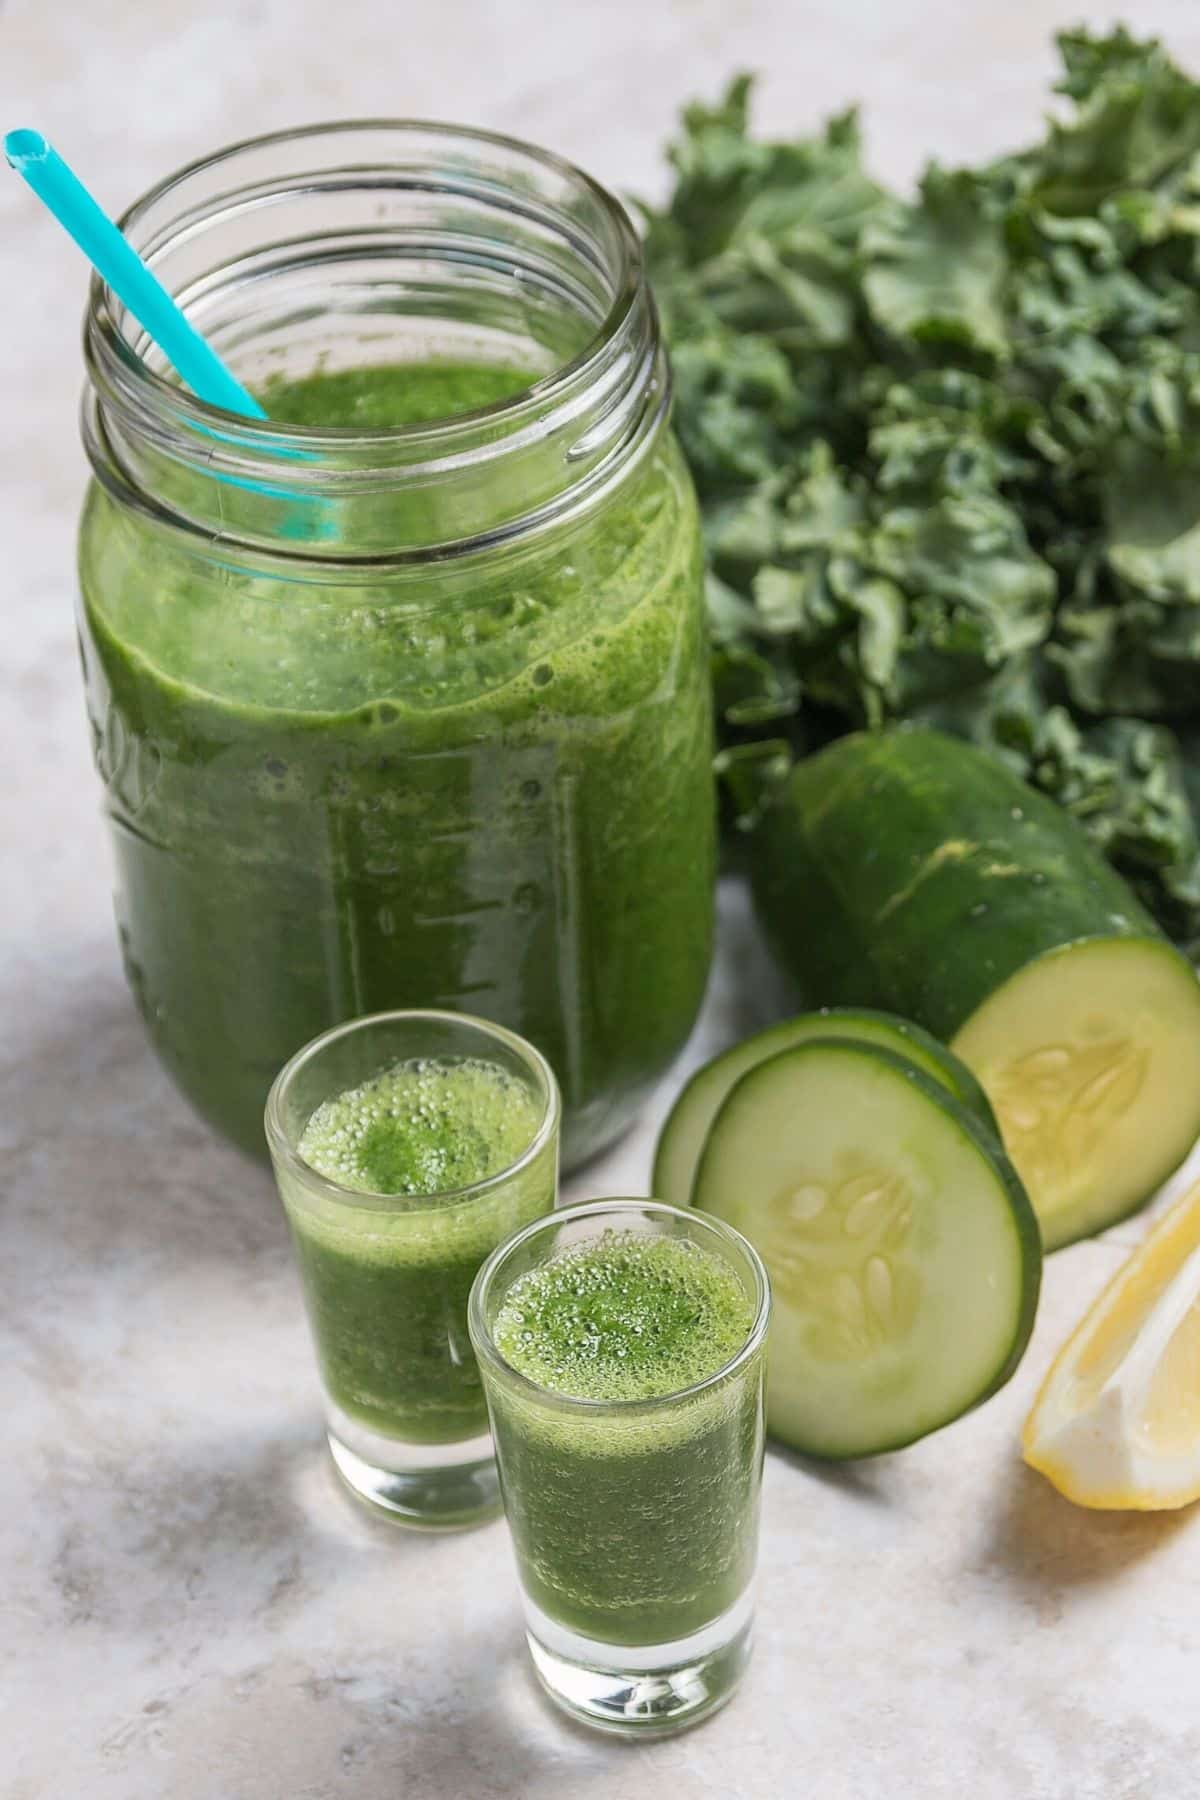 kale juice in shot glasses